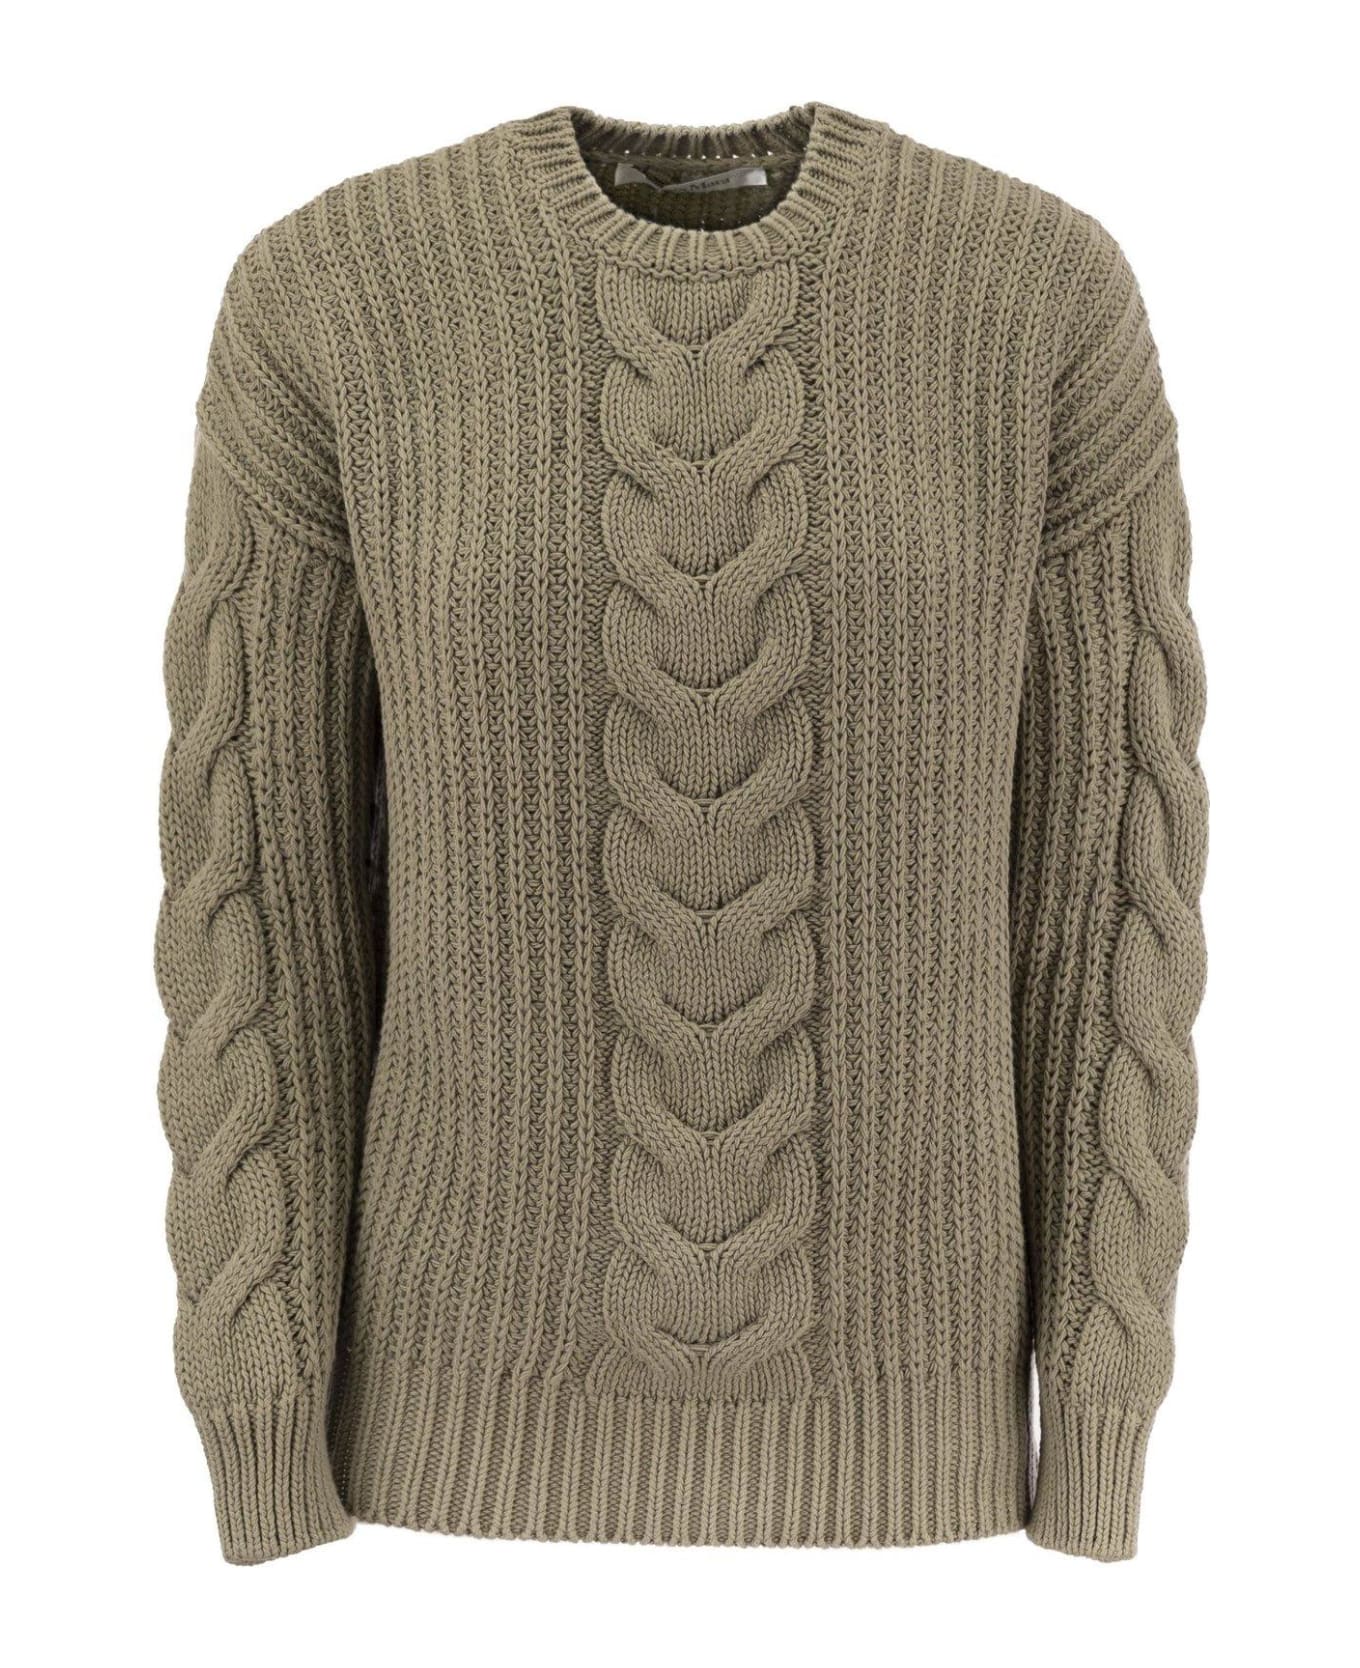 Max Mara Crewneck Knit Sweaters - Kaki ニットウェア